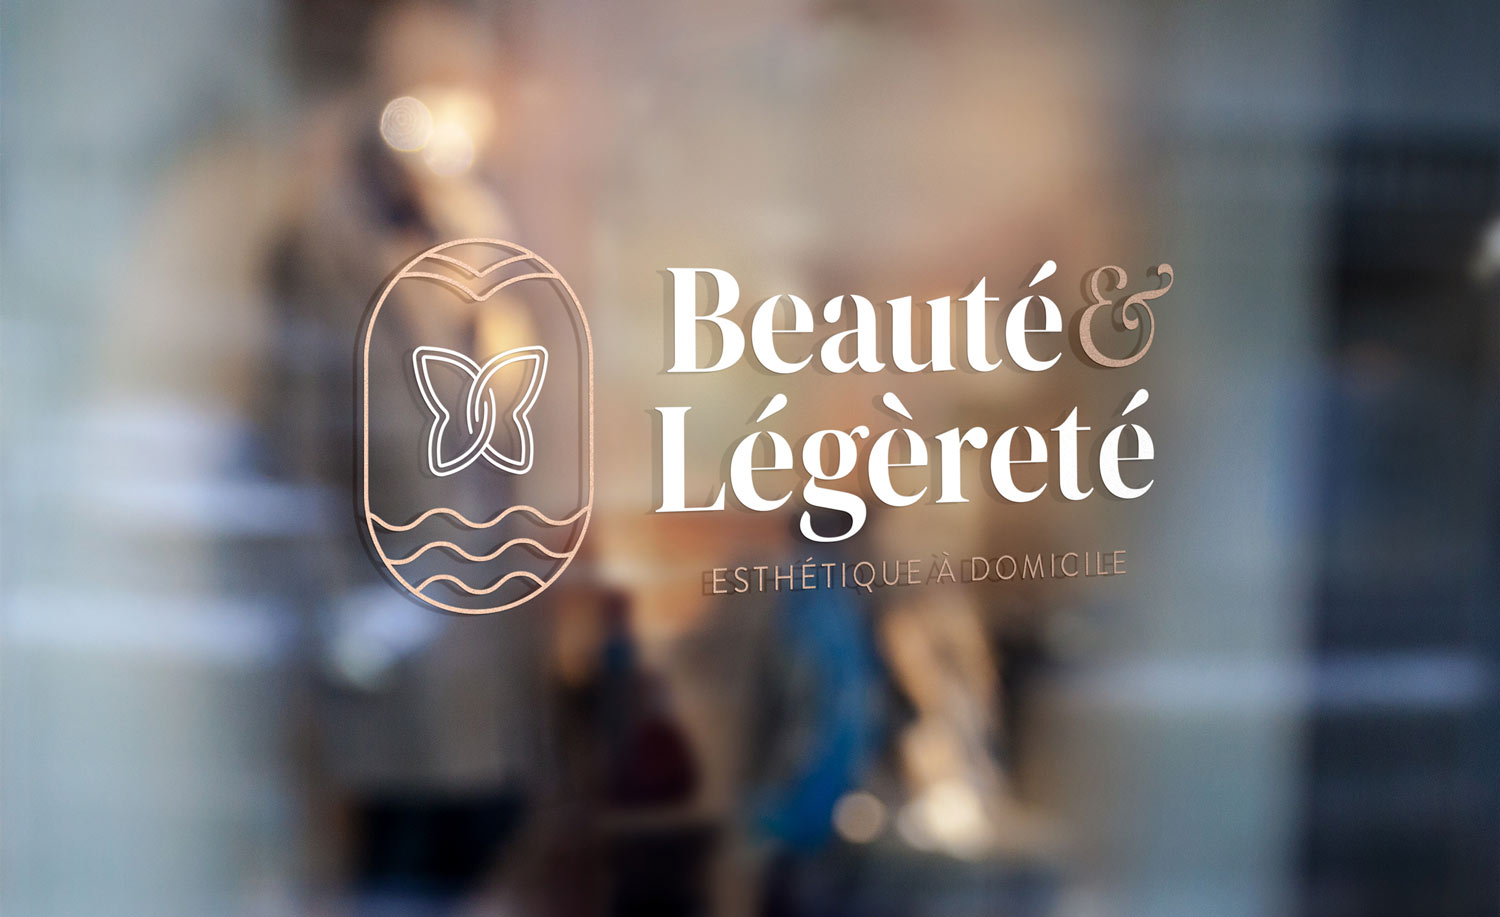 beaute et legerete beautician beauty center logo on window mockup